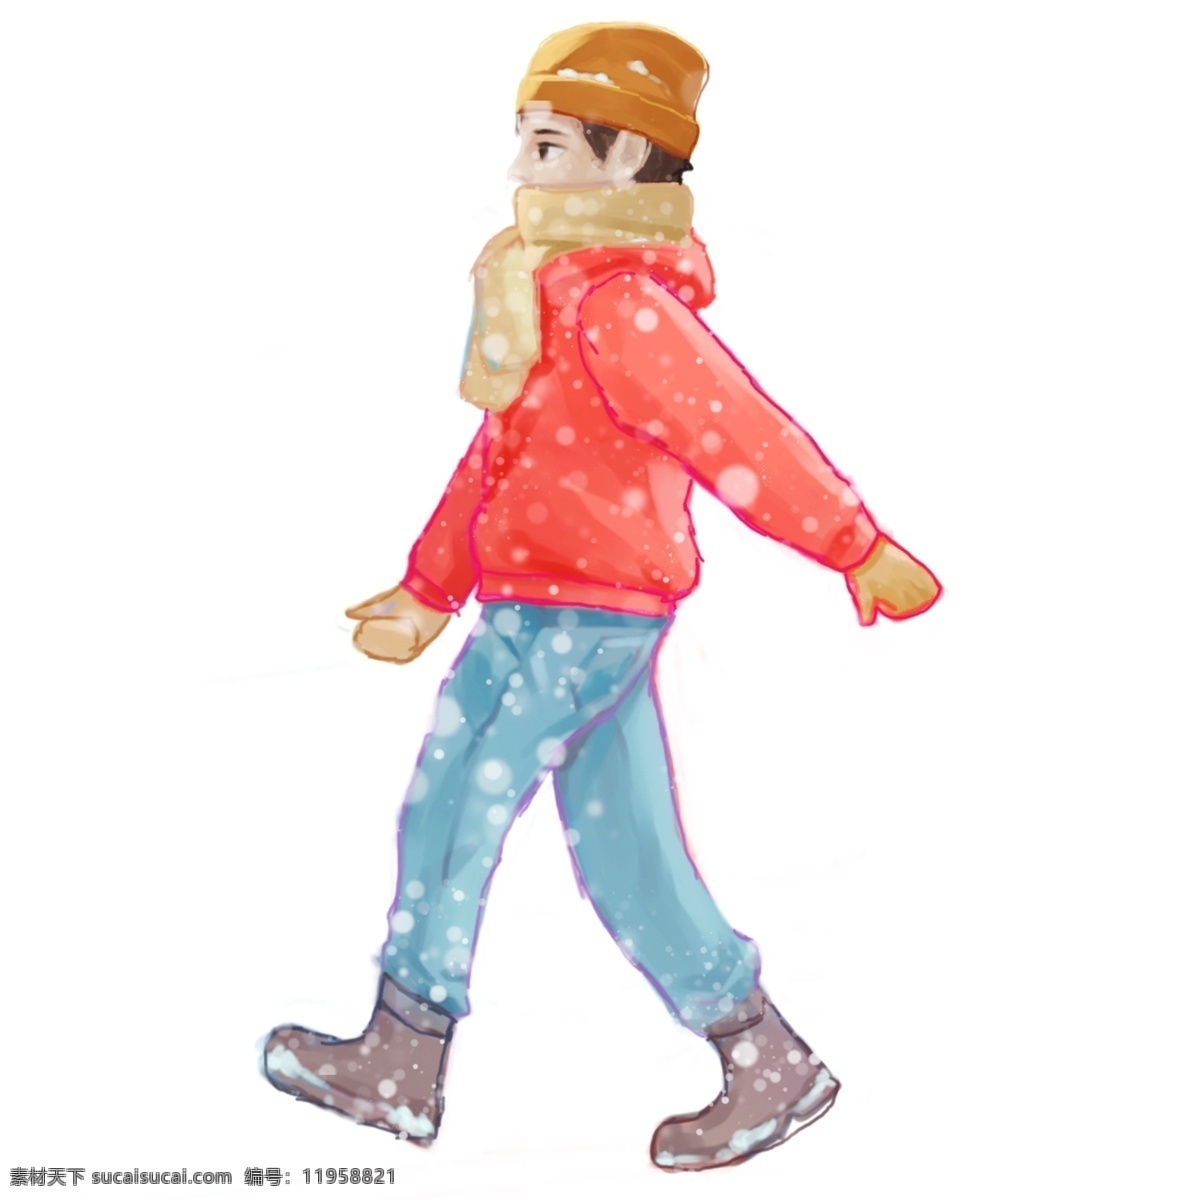 彩绘 冬季 大雪 中 走路 小 男孩 漫画 人物 插画 雪花 人物设计 psd设计